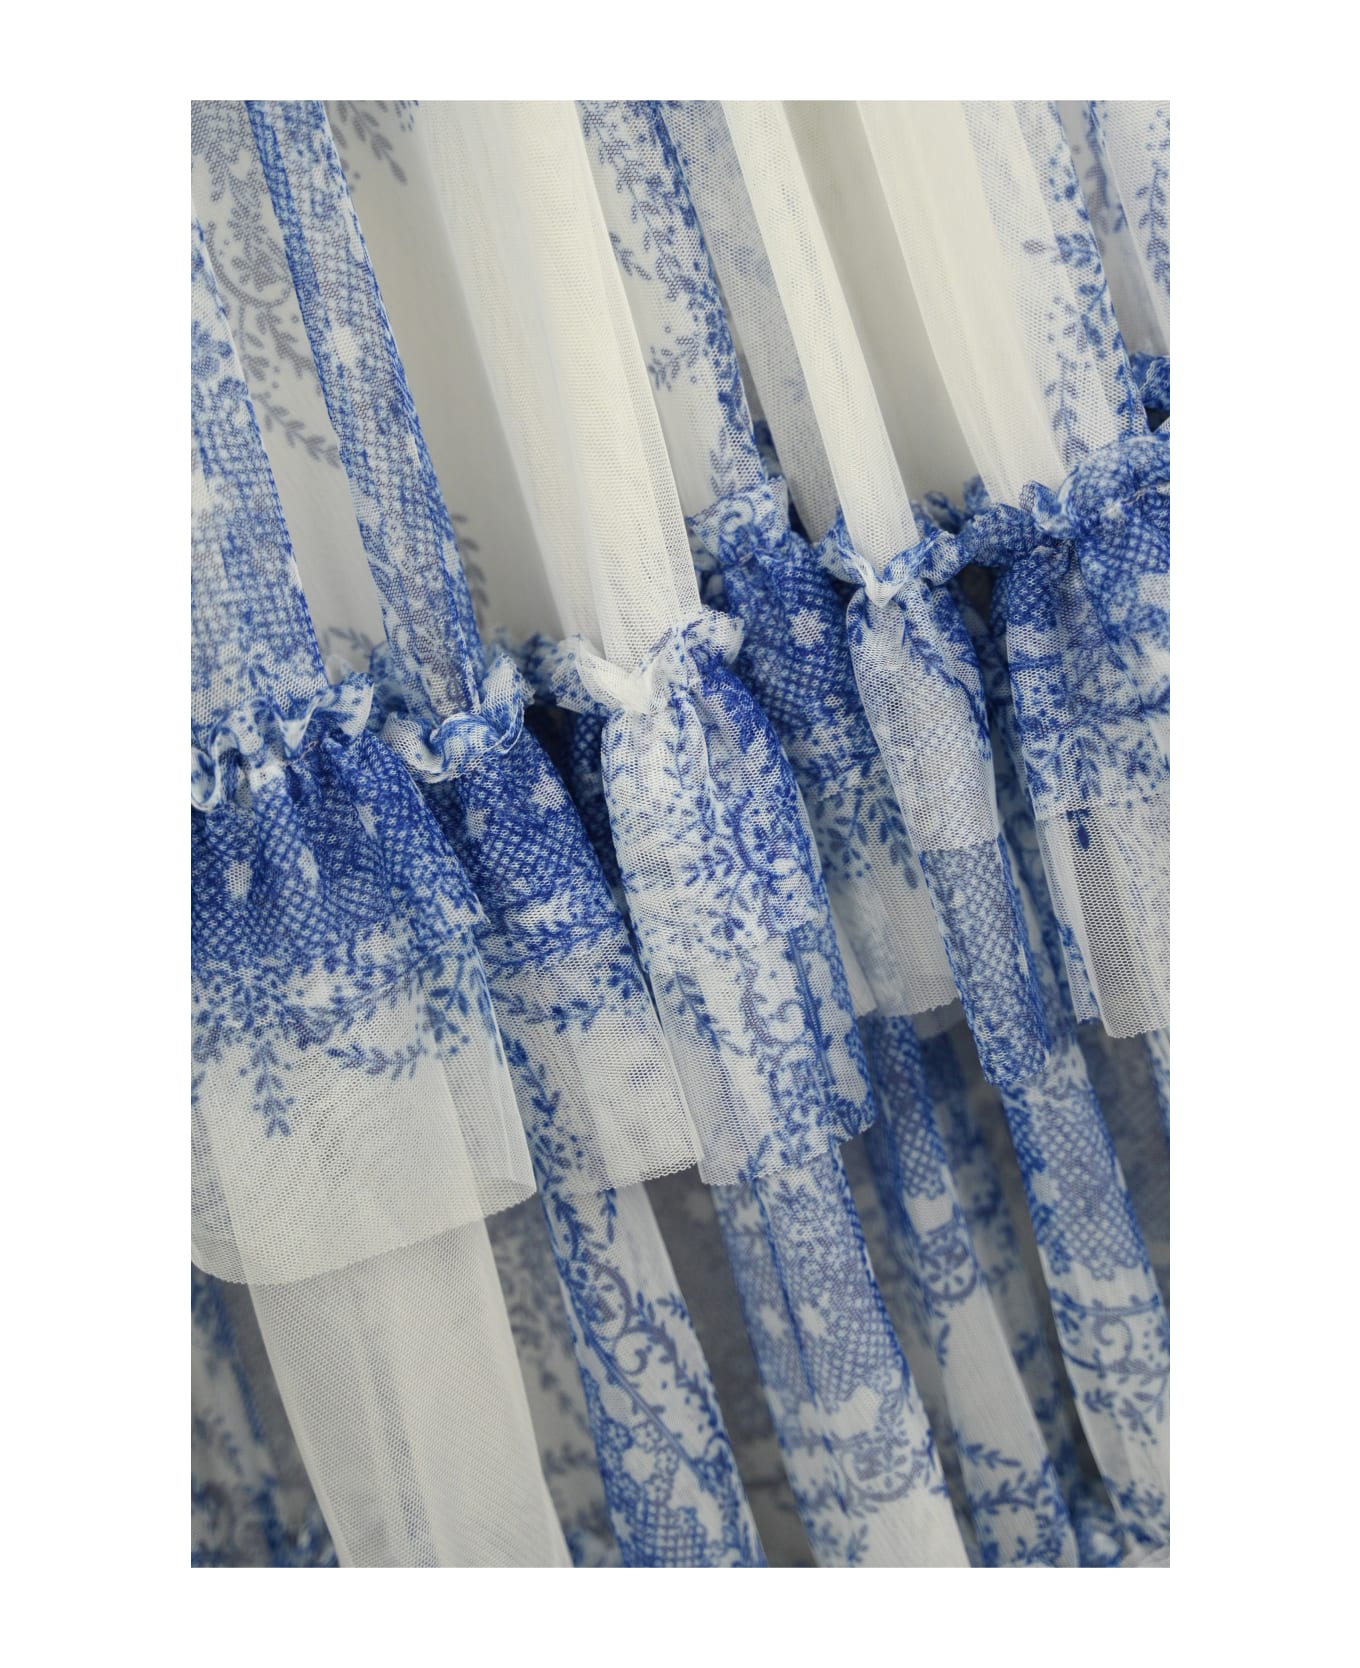 Philosophy di Lorenzo Serafini Long Tulle Dress With Print - Bianco/azzurro ワンピース＆ドレス